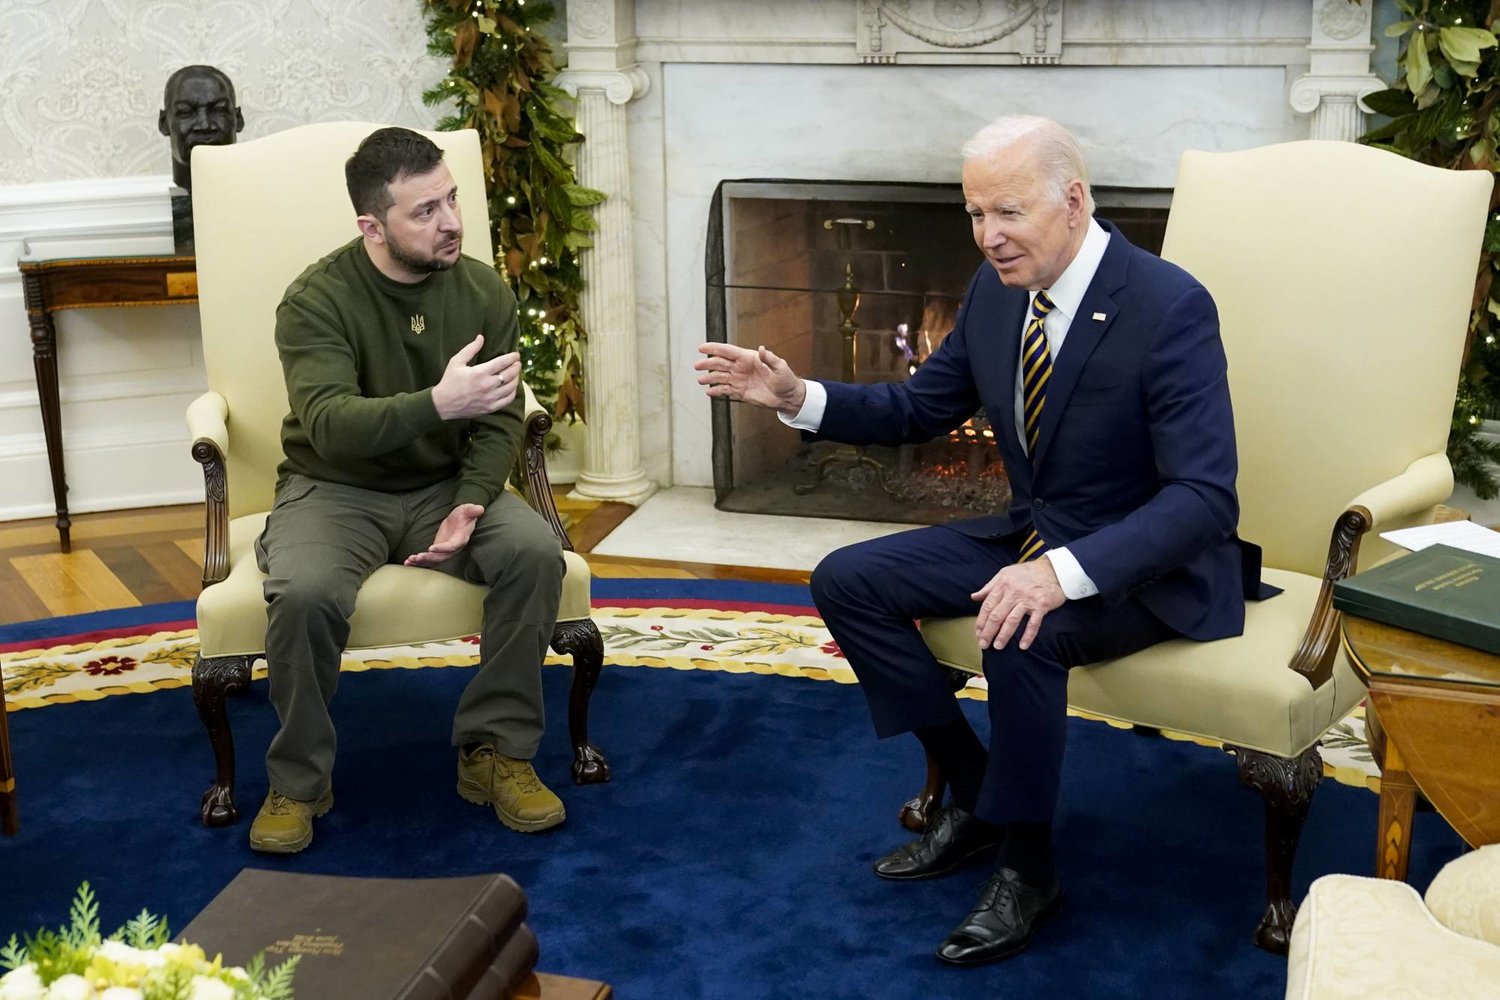 الرئيس الأميركي جو بايدن يتحدث مع الرئيس الأوكراني فولوديمير زيلينسكي أثناء لقائهما في المكتب البيضوي بالبيت الأبيض (أ.ب)